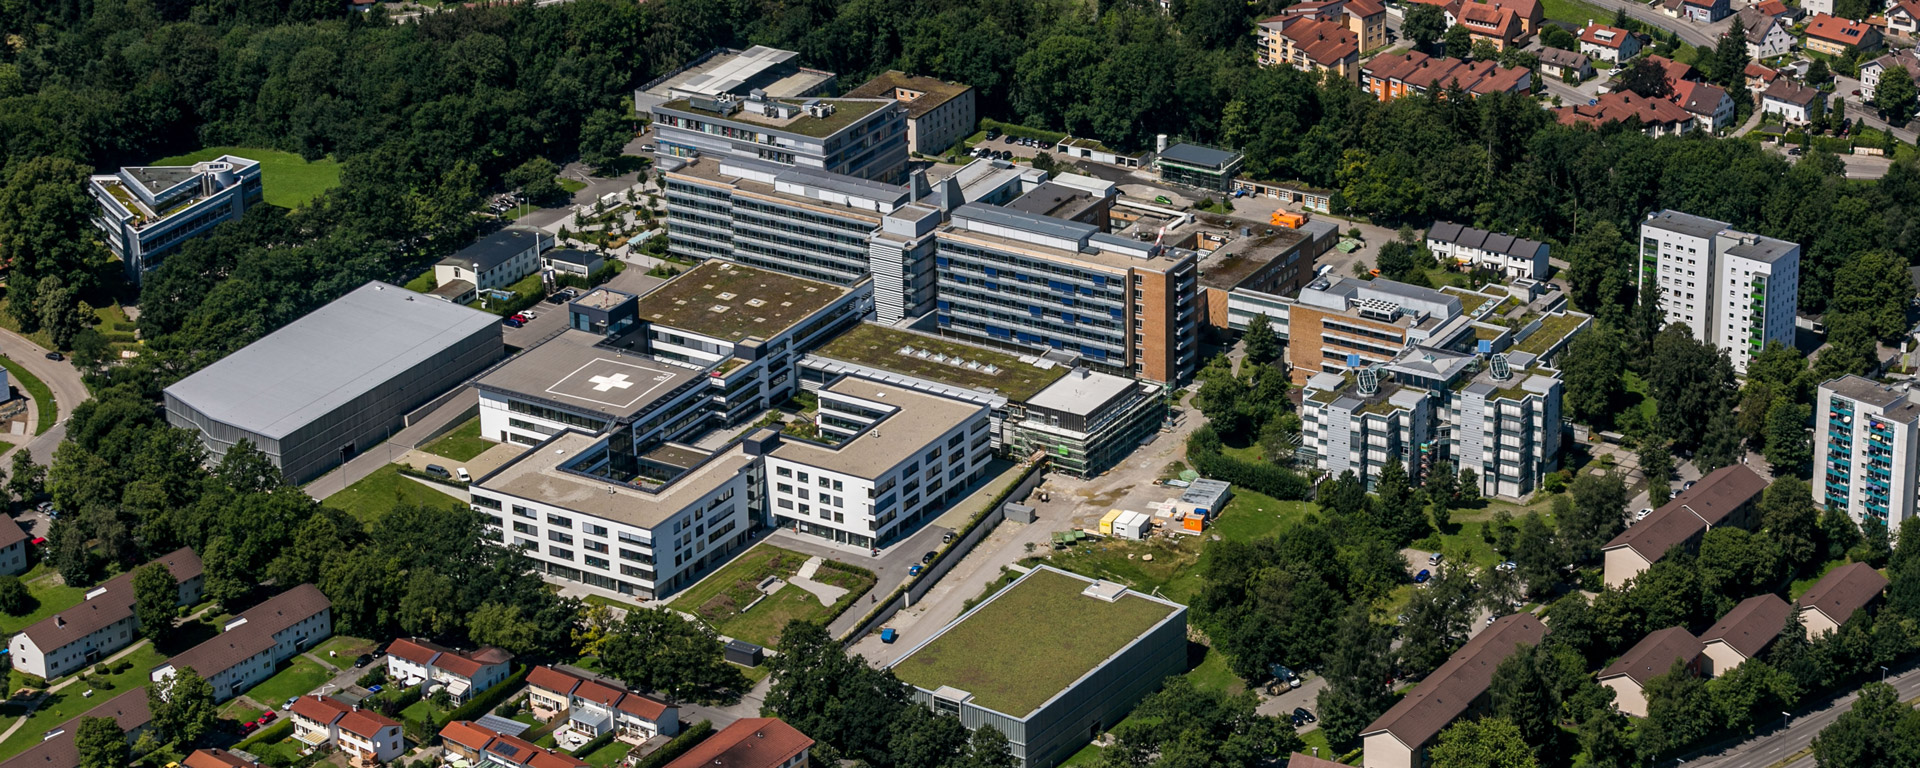 Luftaufnahme des Klinikum Kempten des Klinikverbund Allgäu